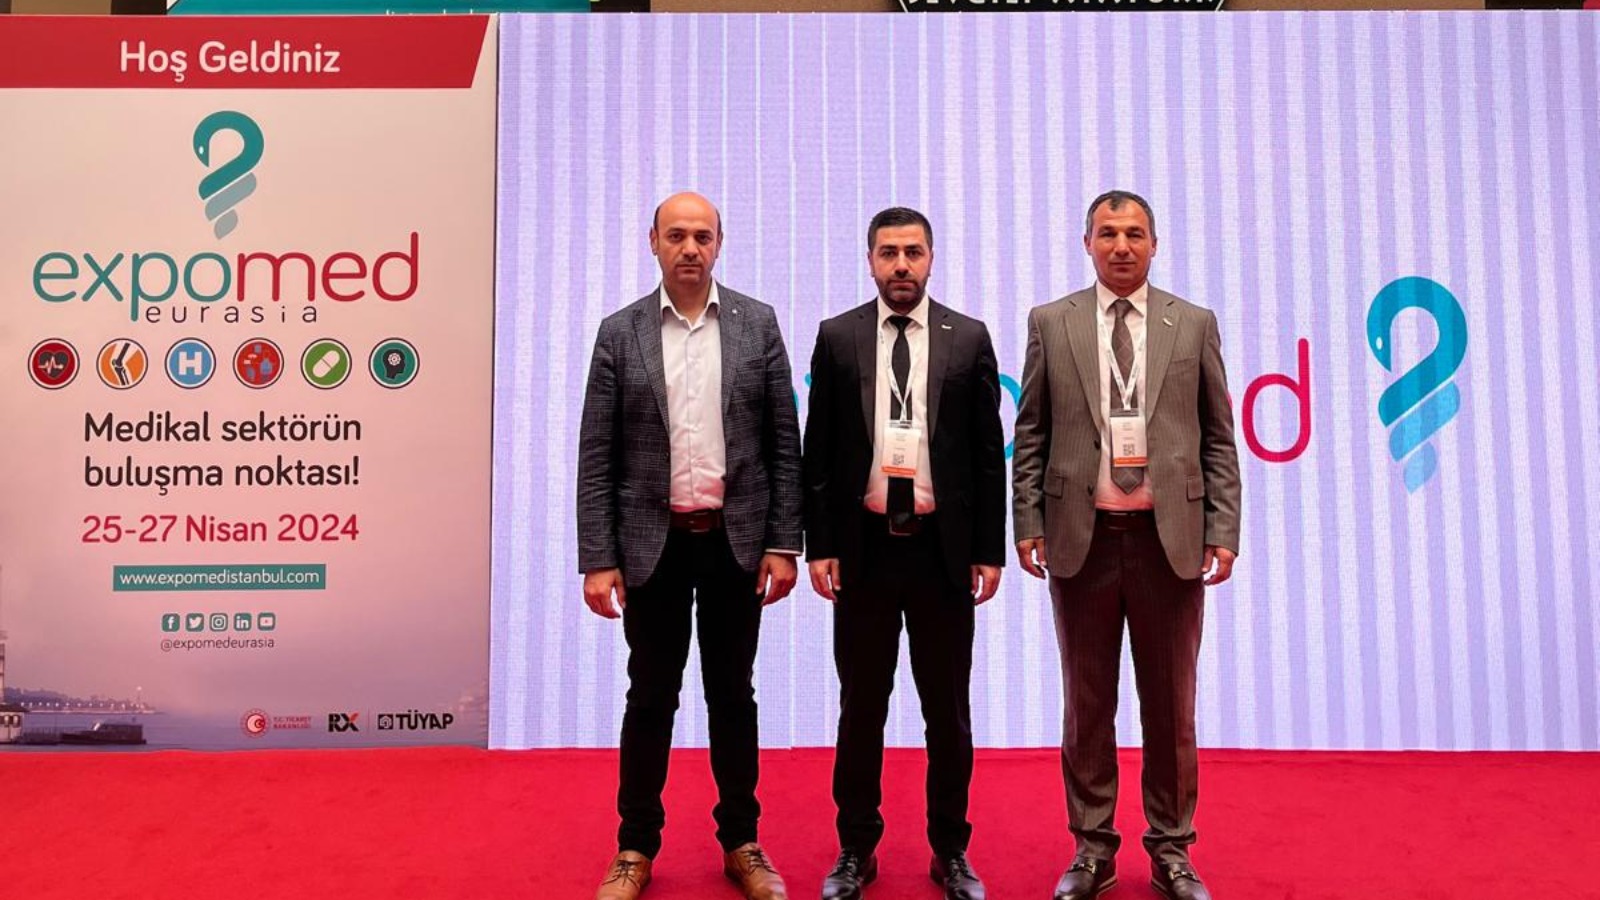 Medikal Sektörü İstanbul'da düzenlenen Uluslararası Expomed Eurasia Fuarı'na Katılım Sağladı